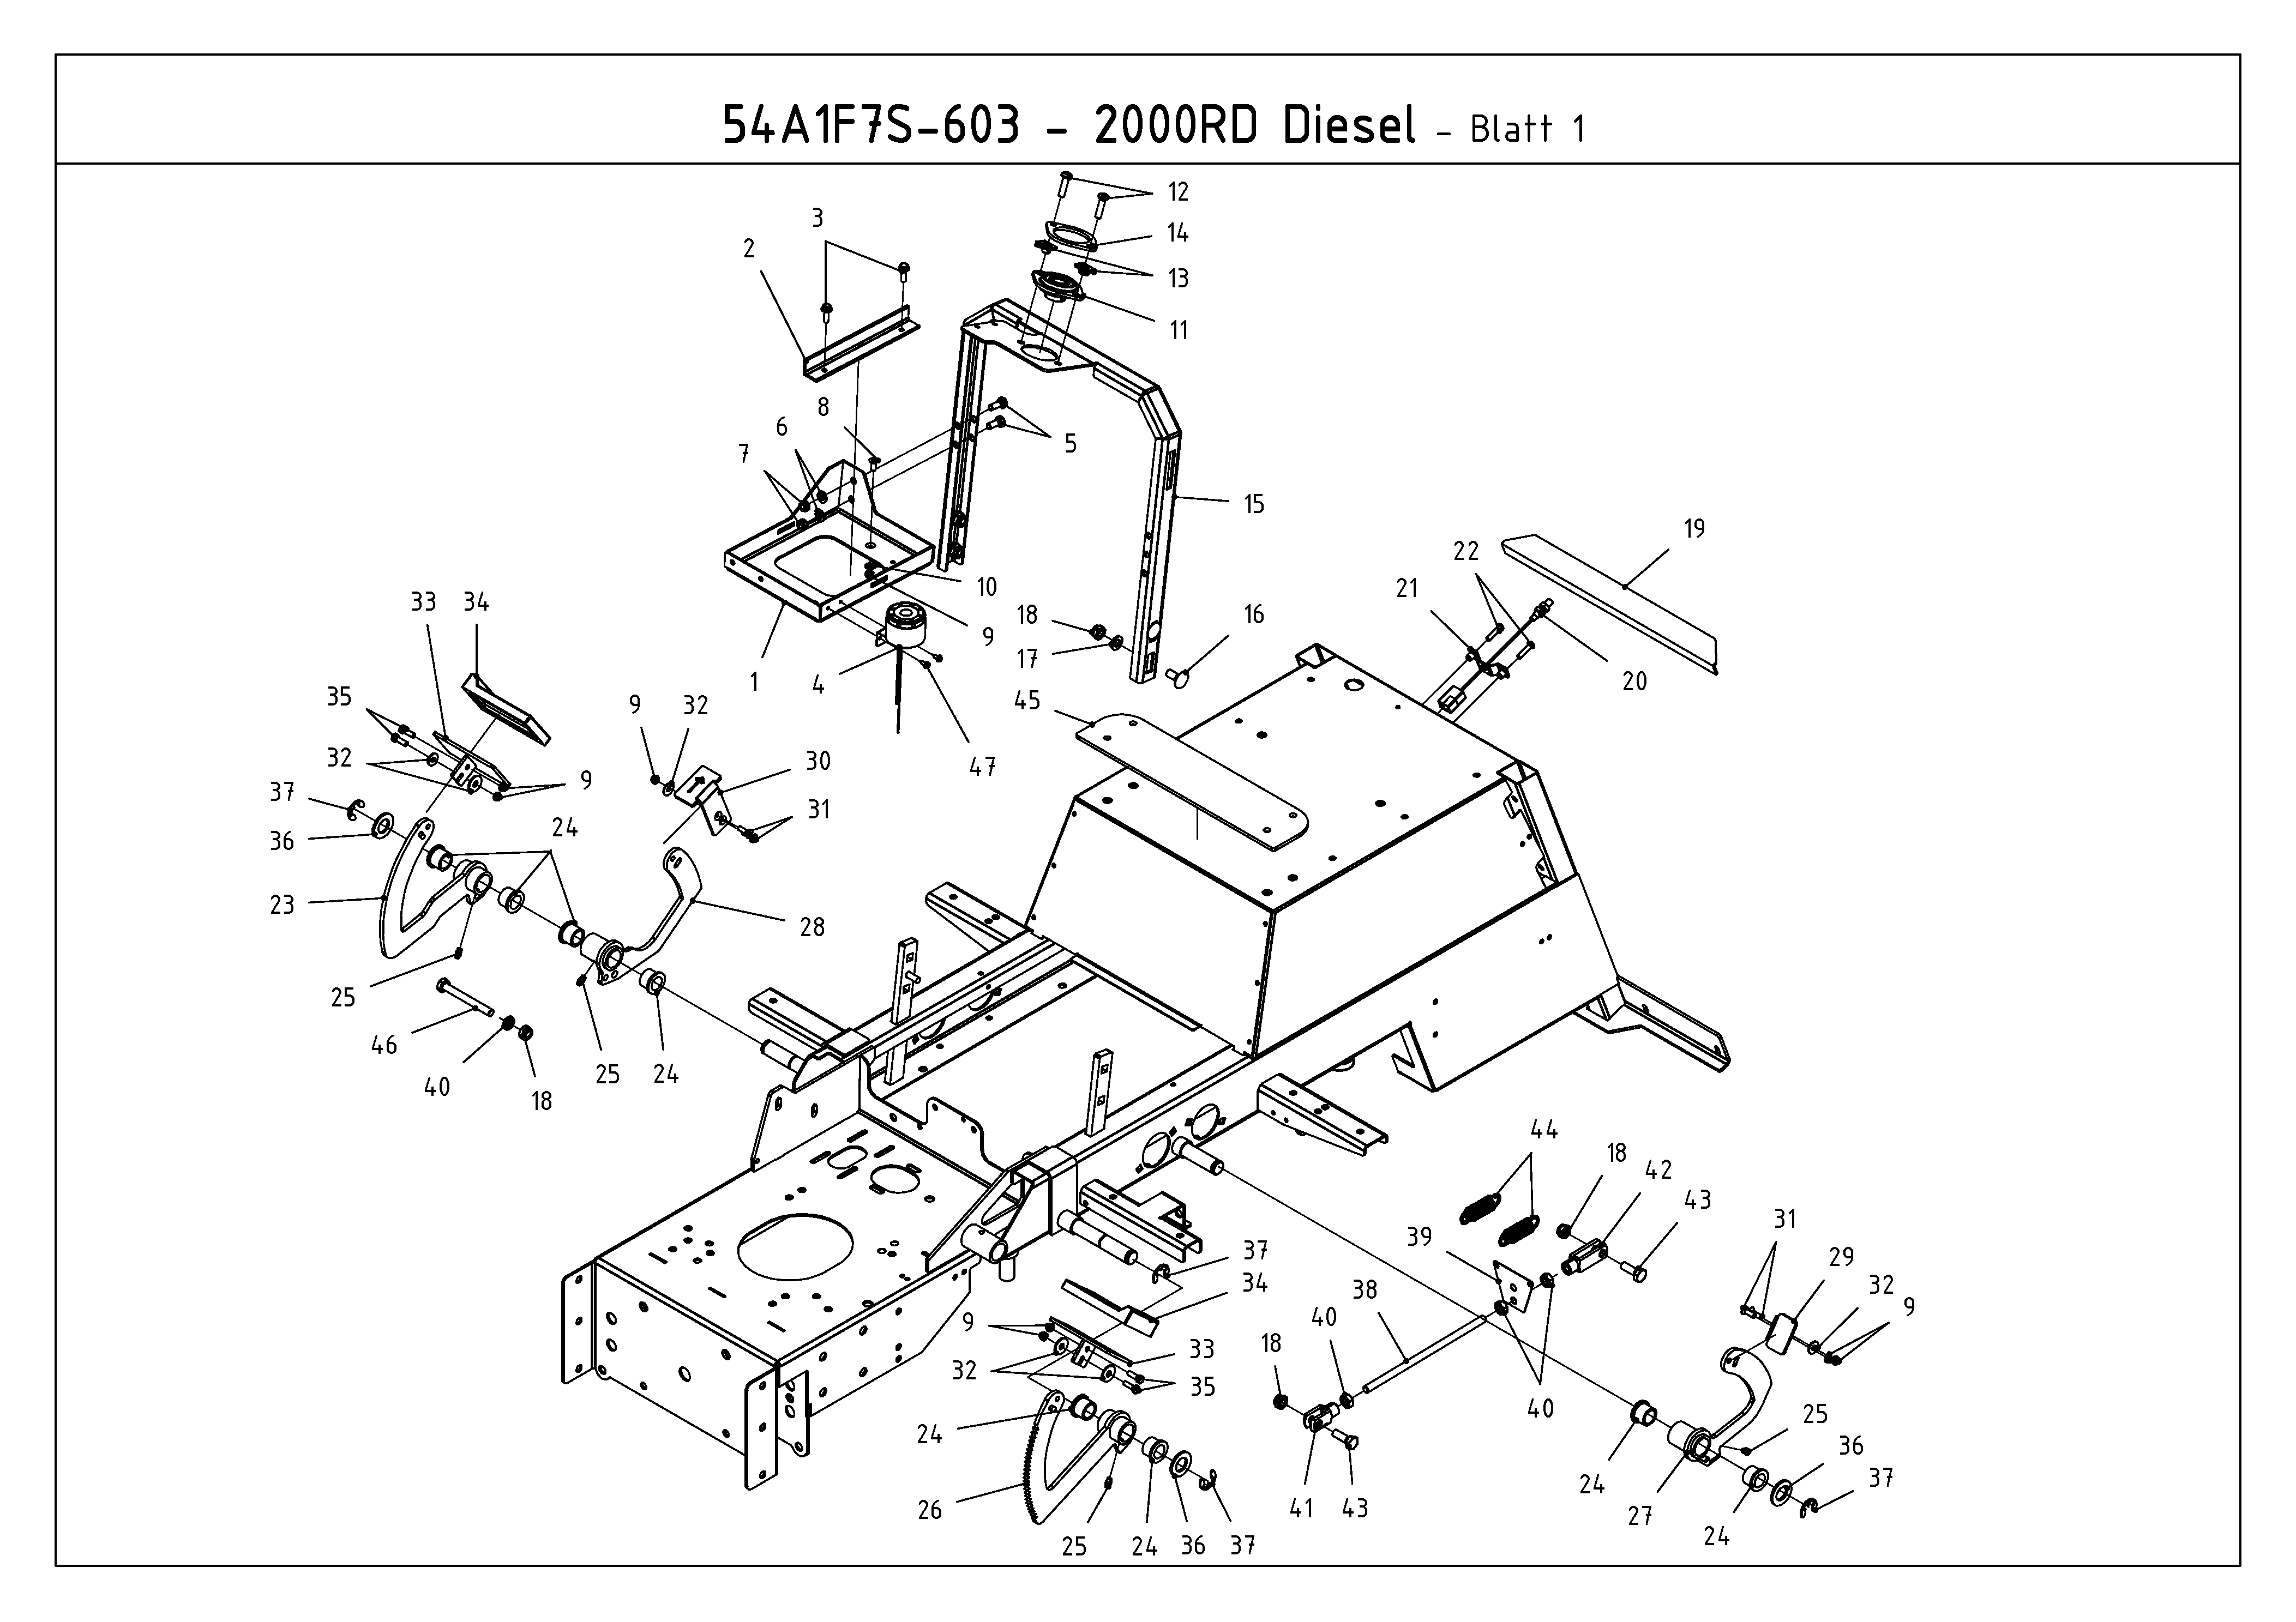 Cub Cadet, Kompakttraktoren, CC 2000 RD, 54A1F7S-603 (2010), Pedale, MTD Ersatzteil-Zeichnungen